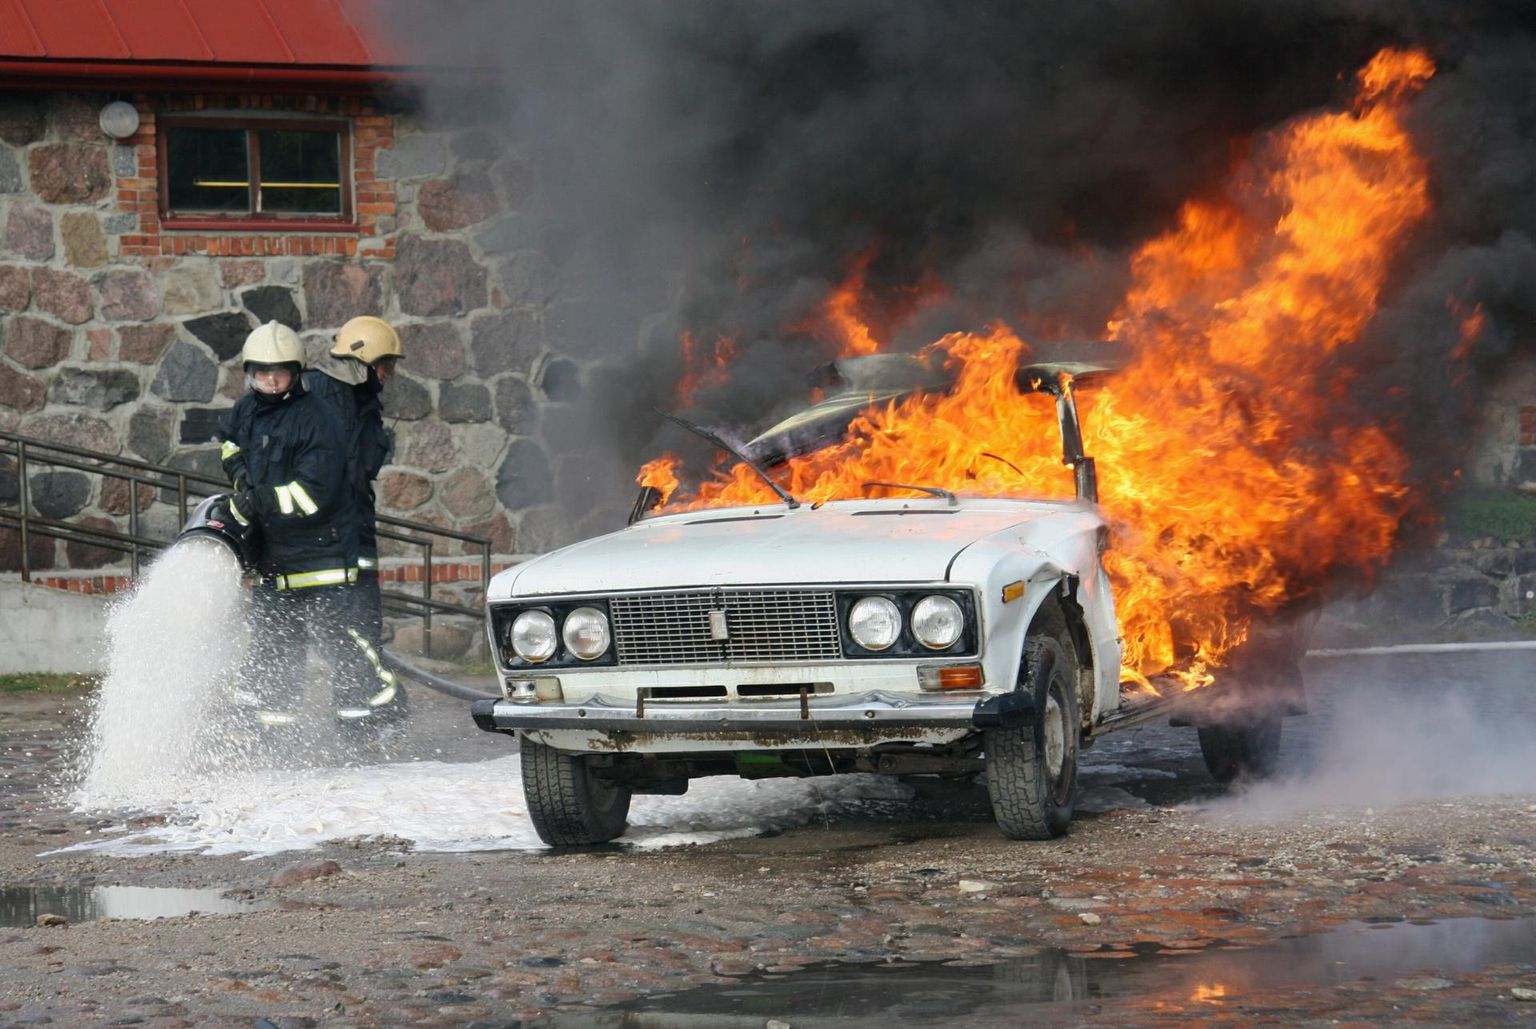 Эта горящая машина демонстрировалась спасателями в день безопасности и не связана с инцидентом, о котором говорится в заметке.